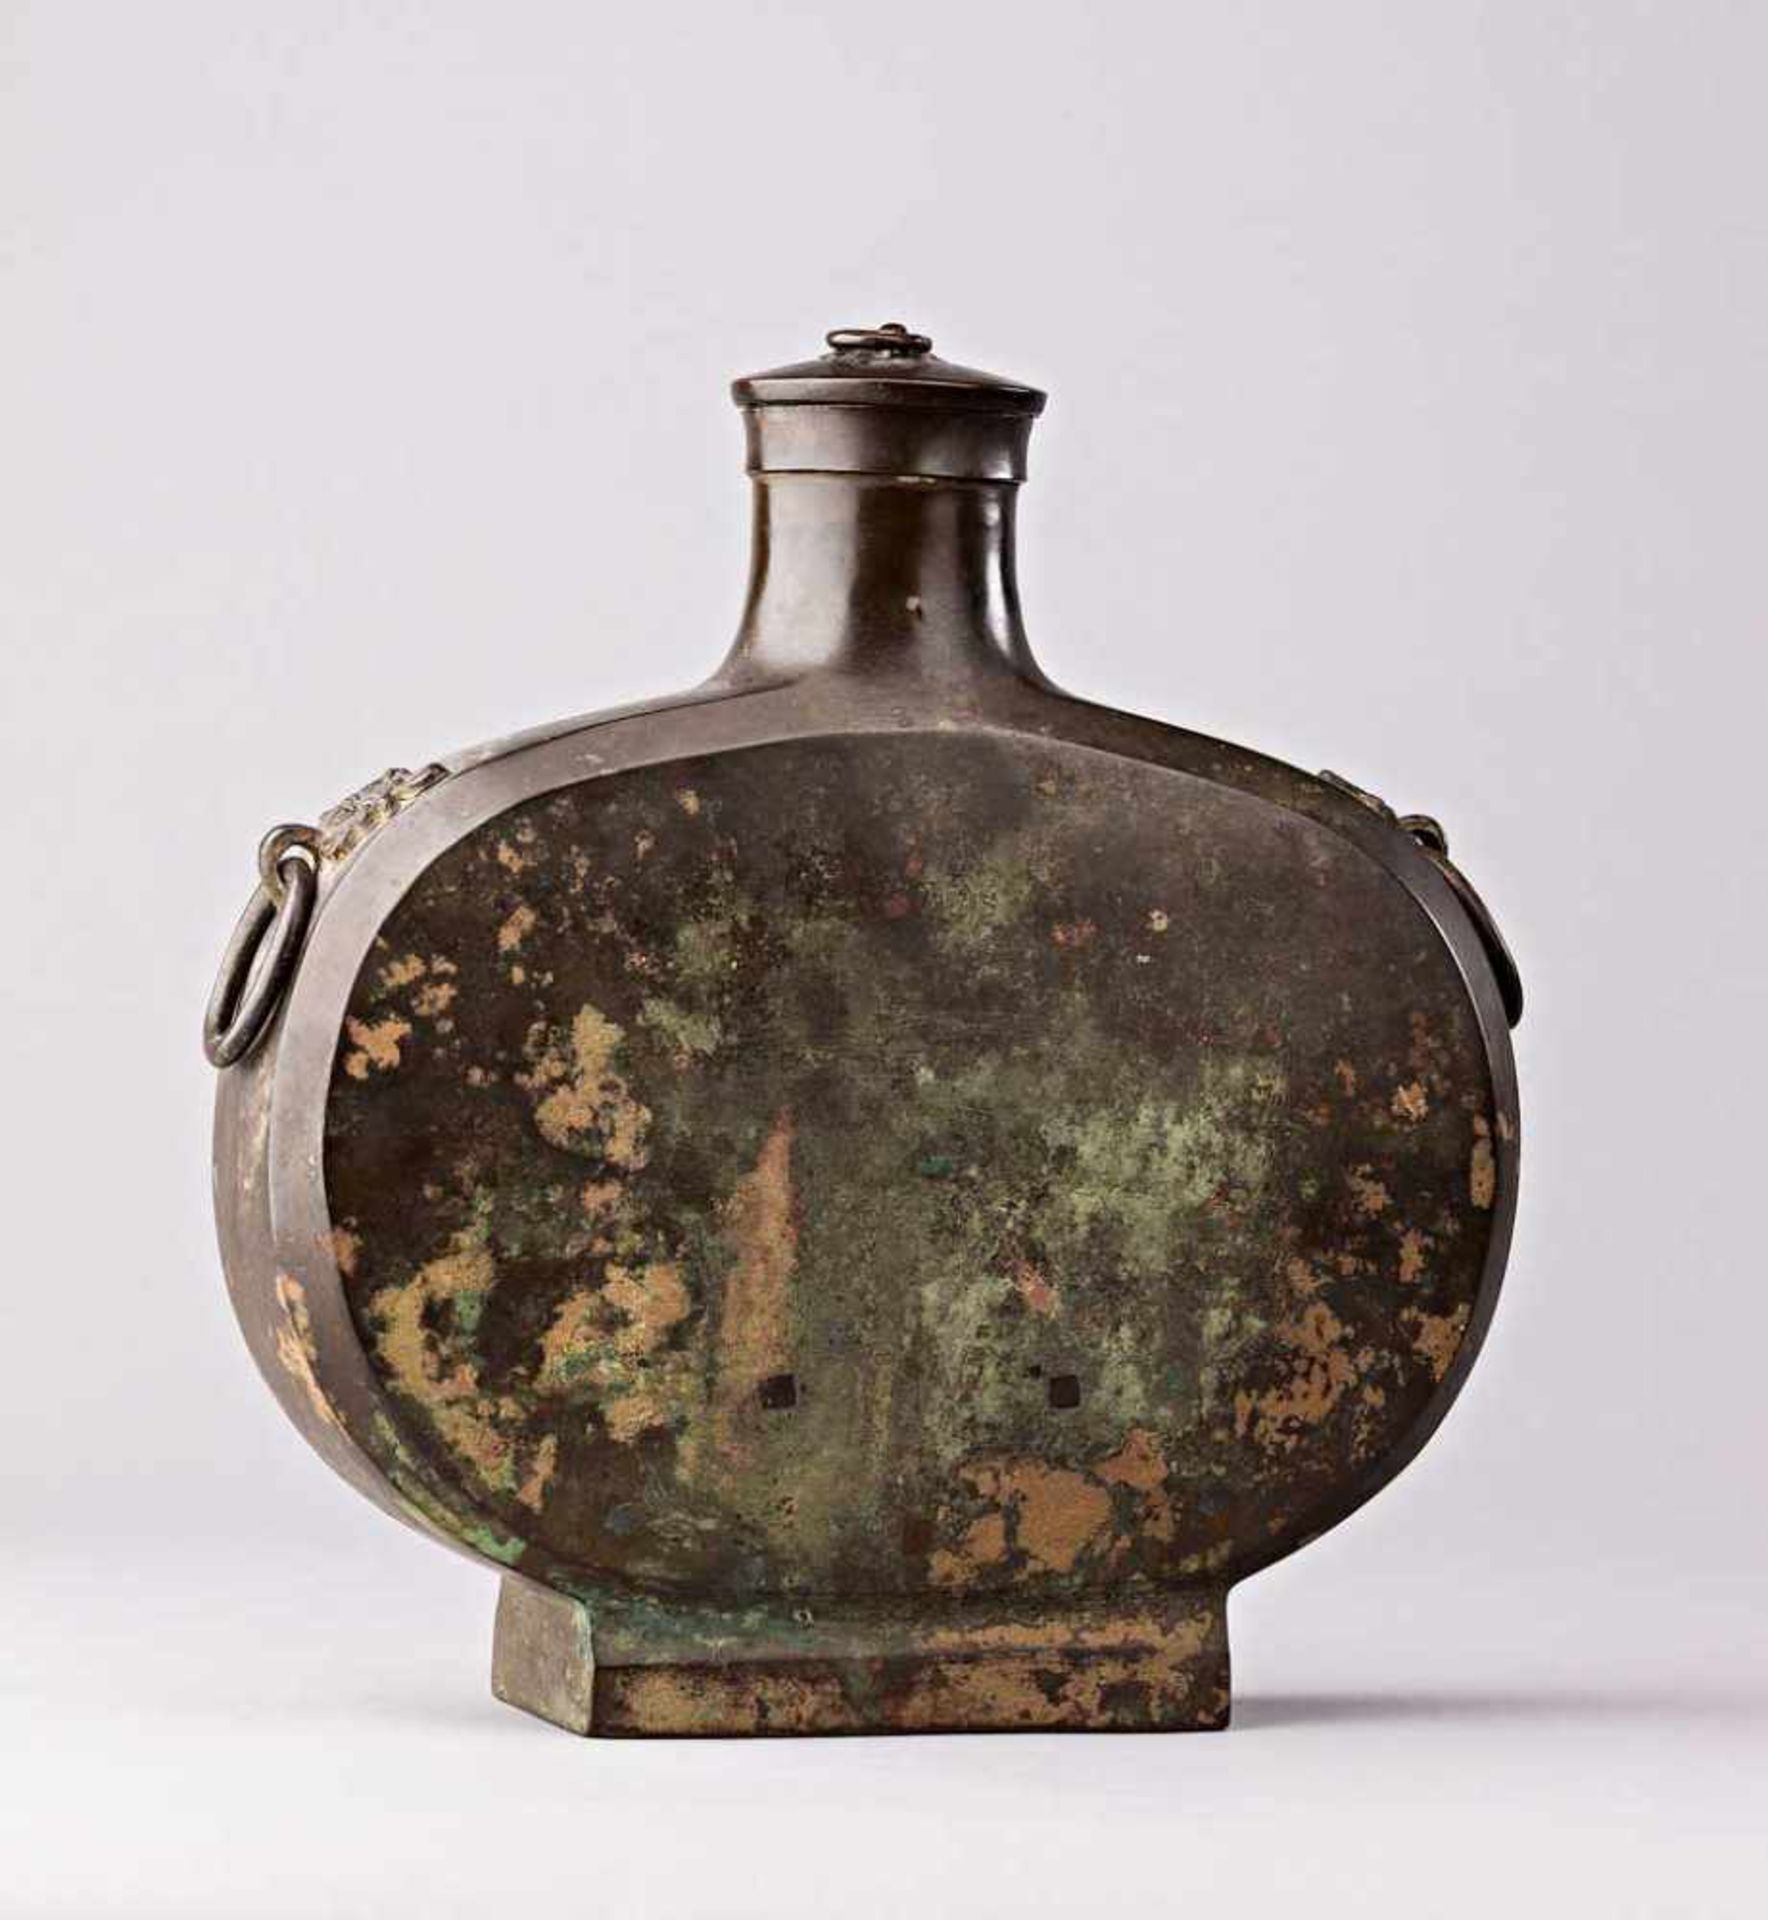 Pilgerflasche. Abgeflachte Form. Maskarons mit Ringösen. Bronze. China, 19. Jh. H 28 cm